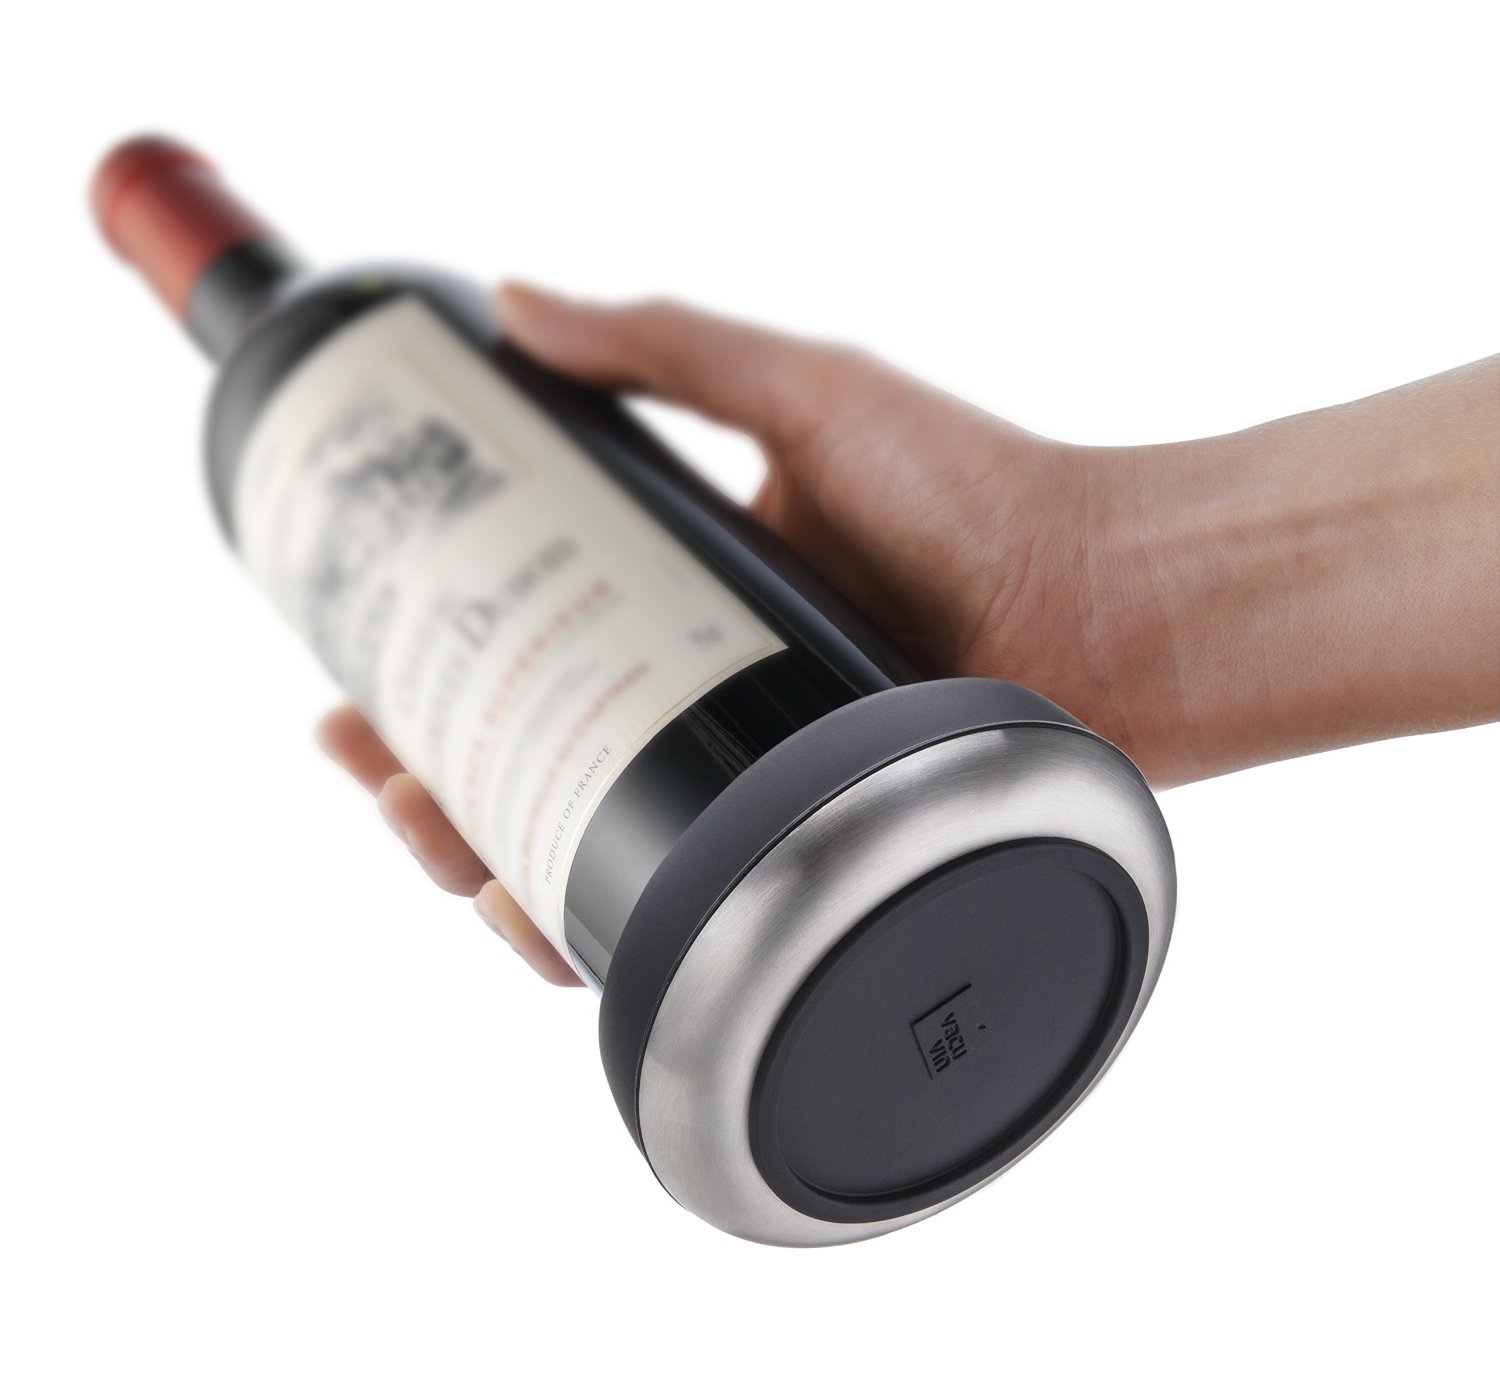 Termómetro para botellas Vacu Vin, Accesorios